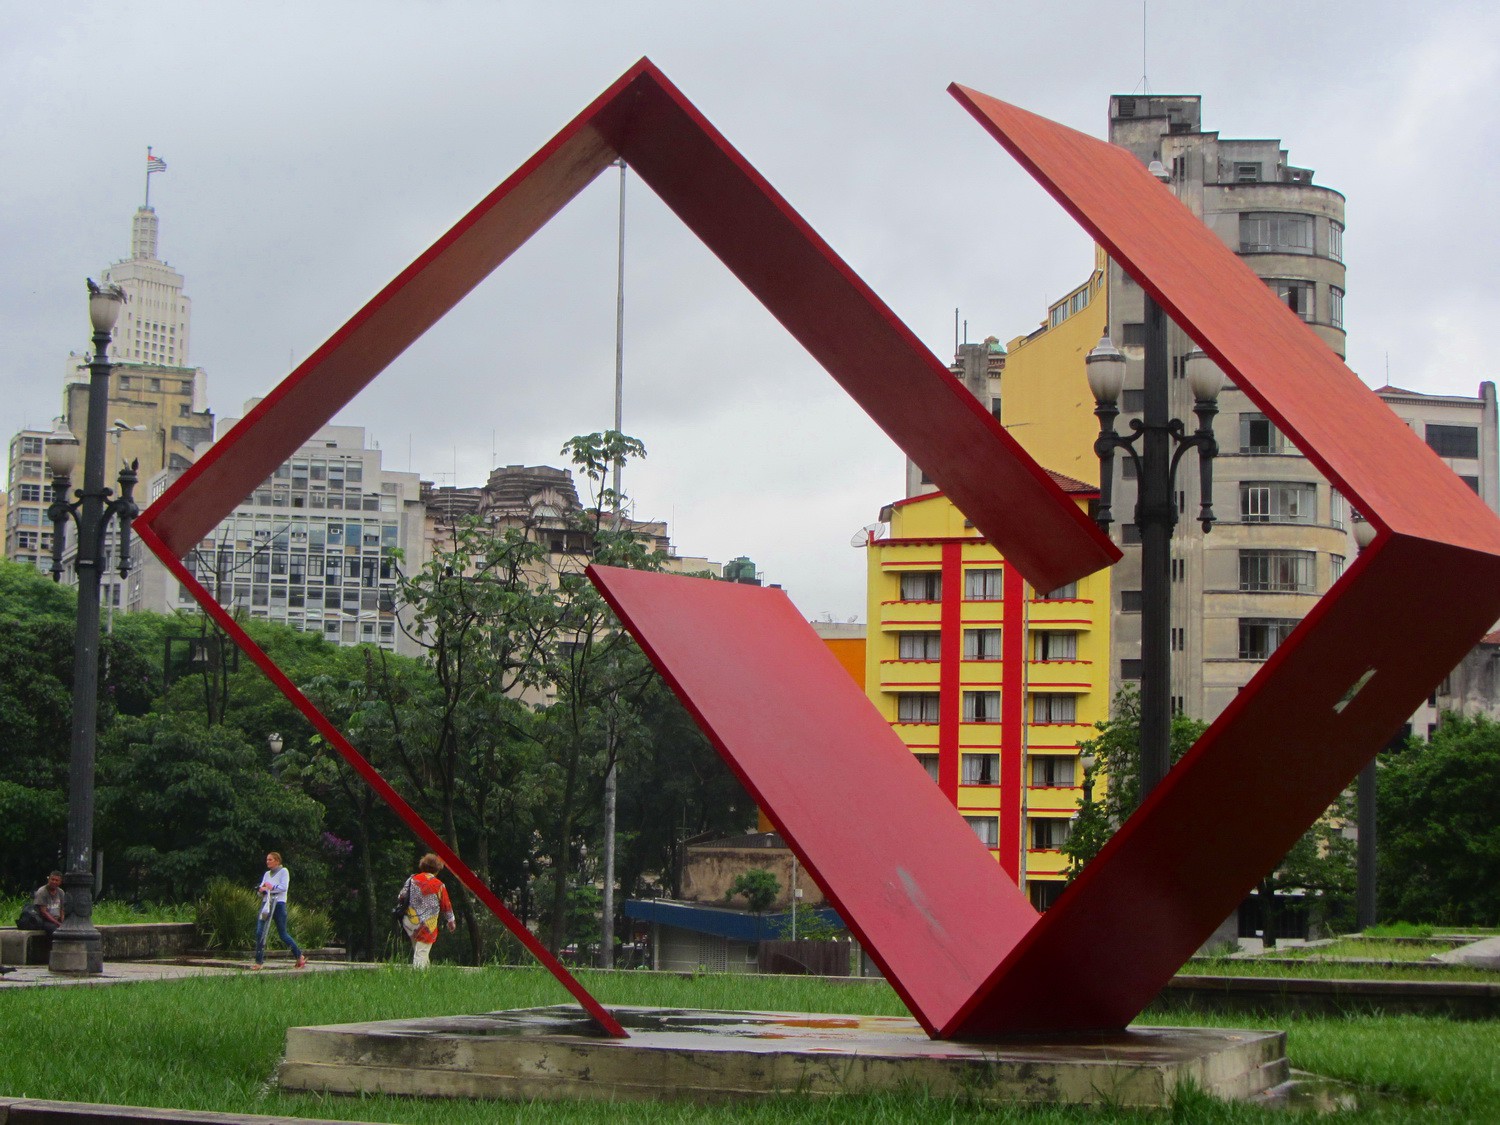 Praca da Se in the center of Sao Paulo